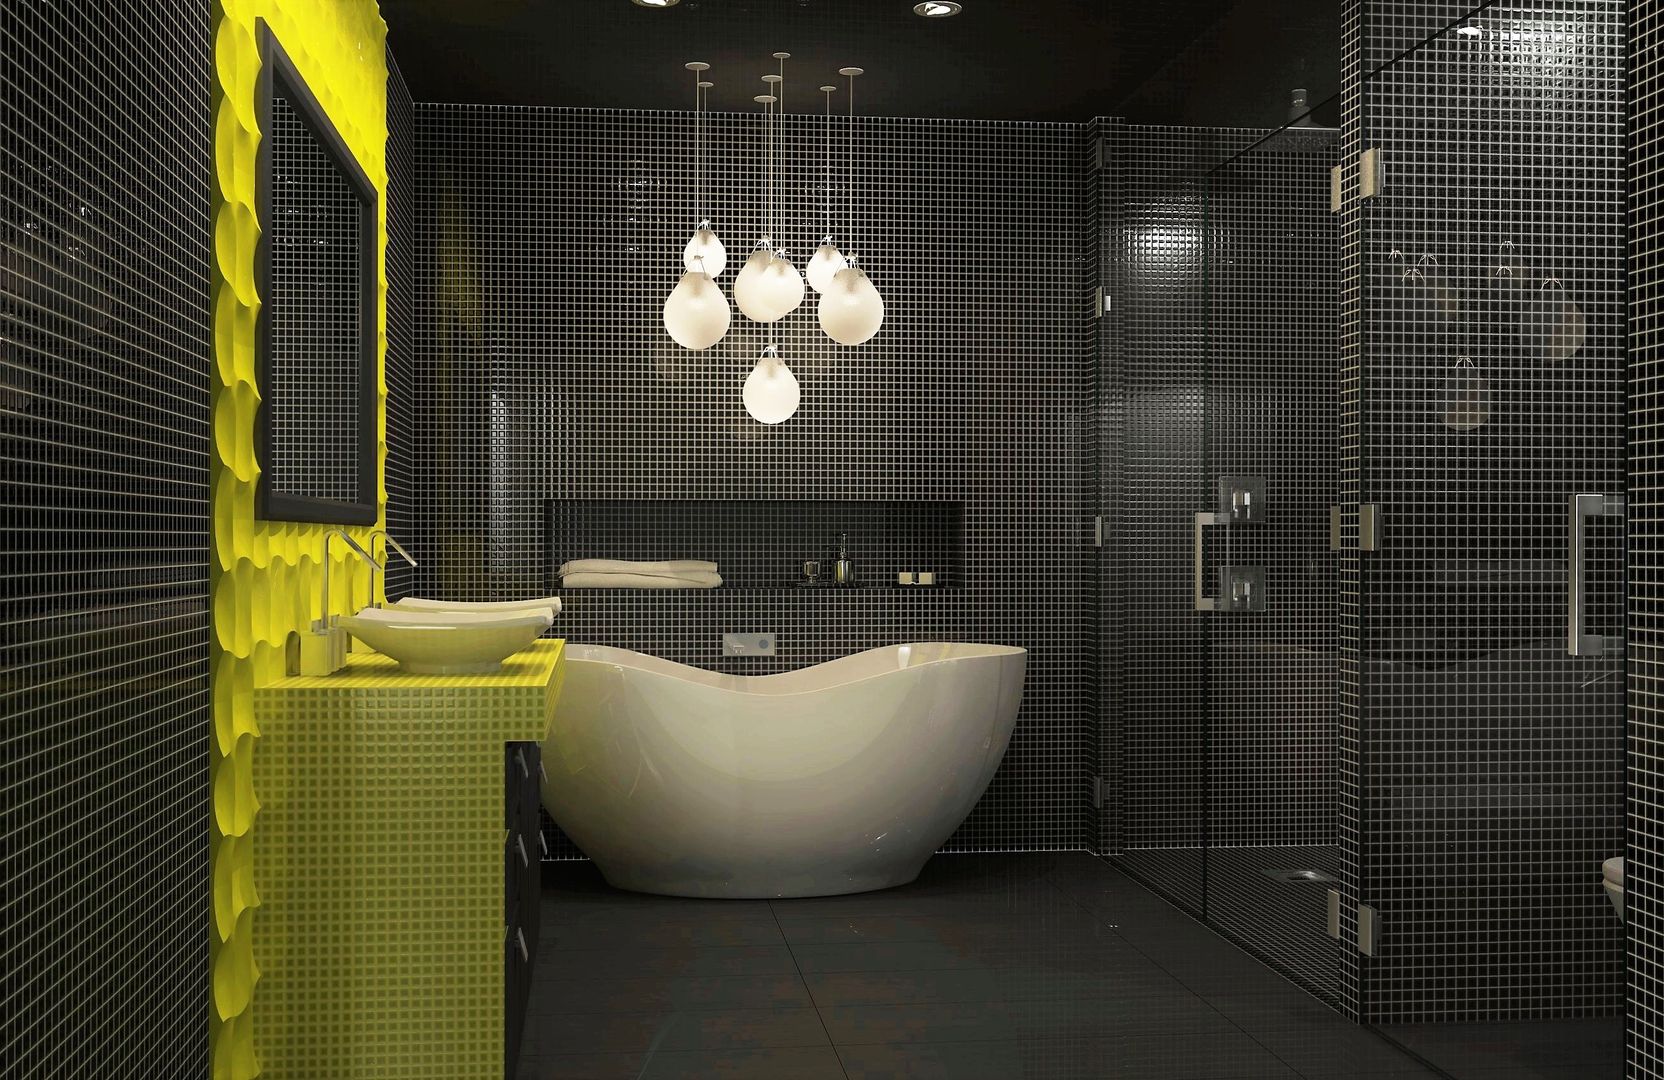 Bathroom interior design Lena Lobiv Interior Design Modern Banyo interior,interiordesign,bathroom,mosaic tile,bright colours,homedecor